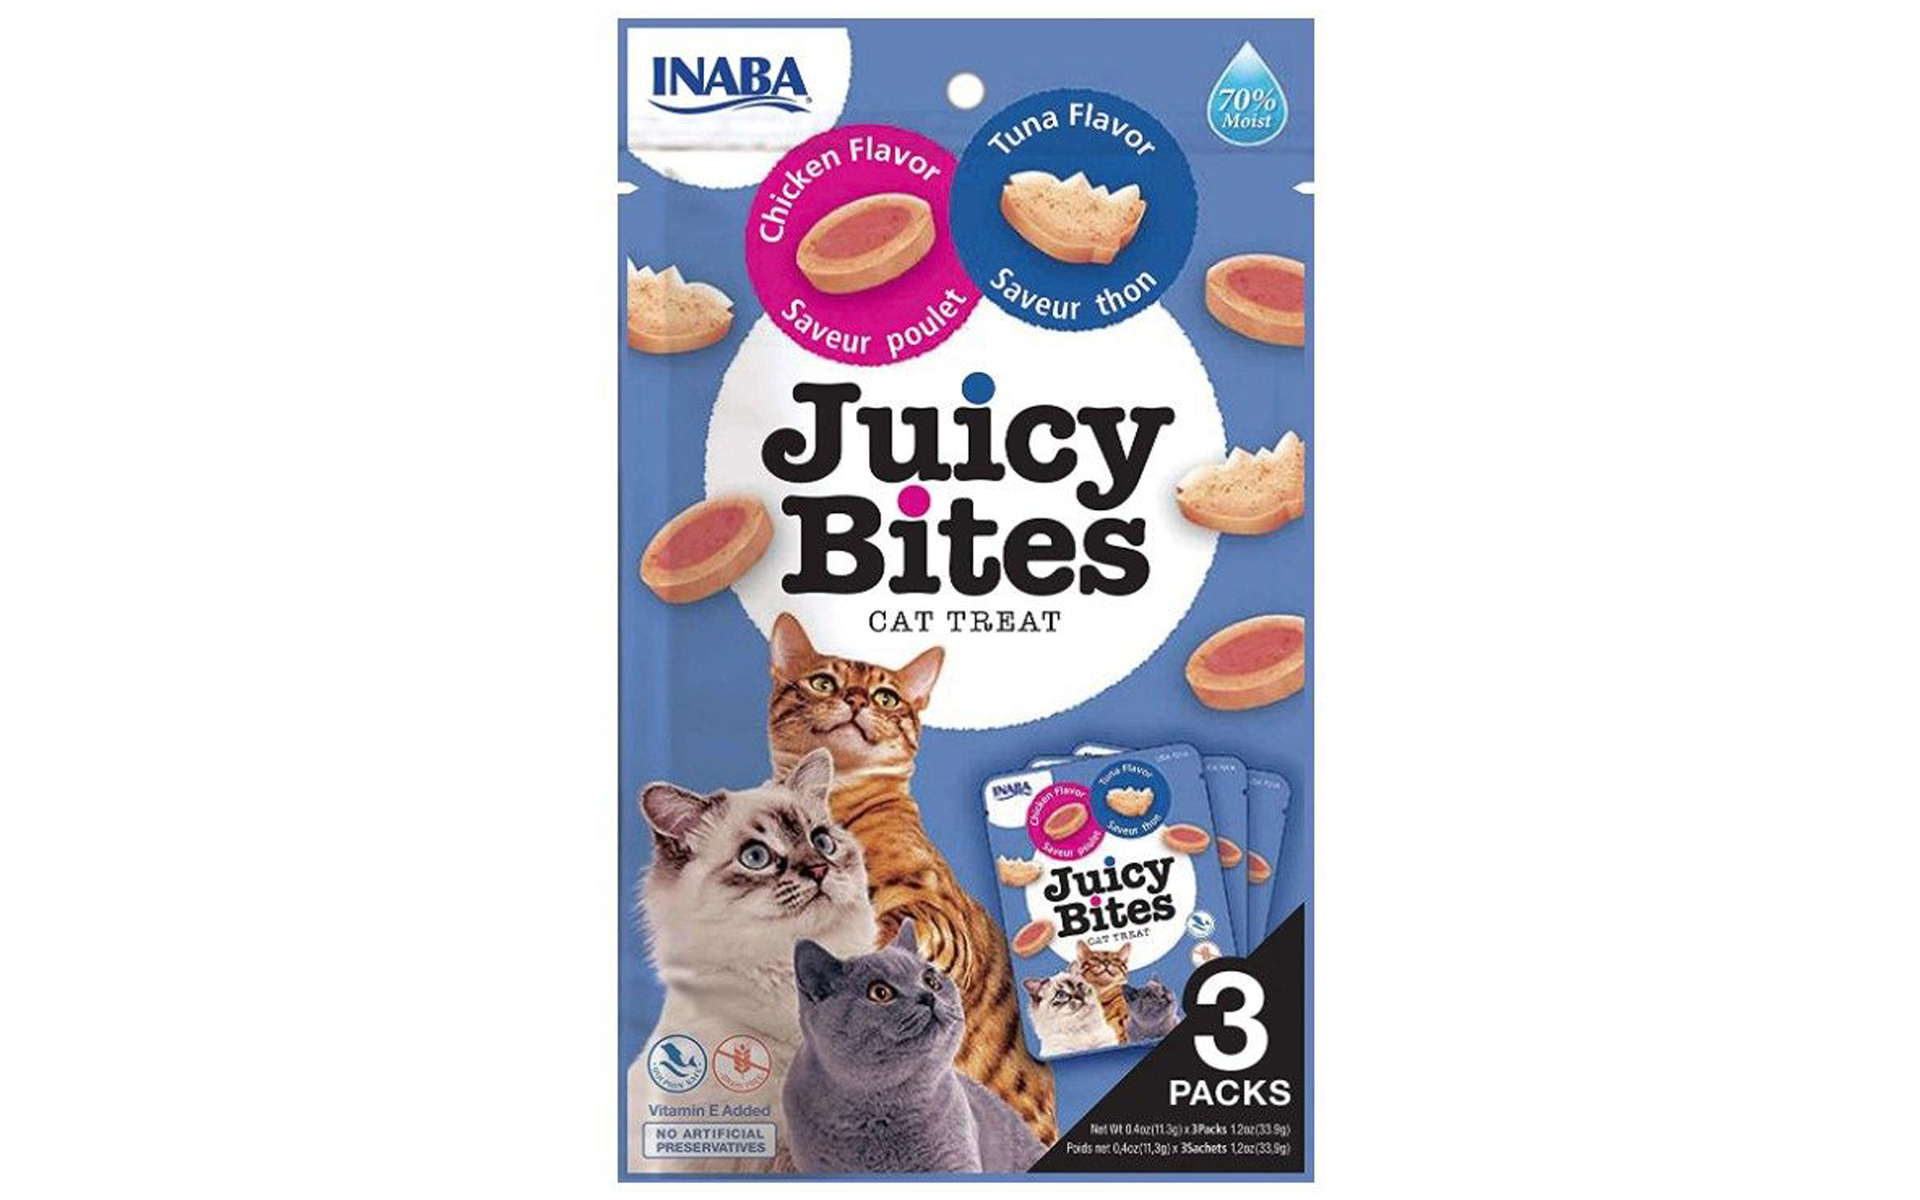 Juicy Bites Cat Treat Tuna and Chicken Flavor, 3 count